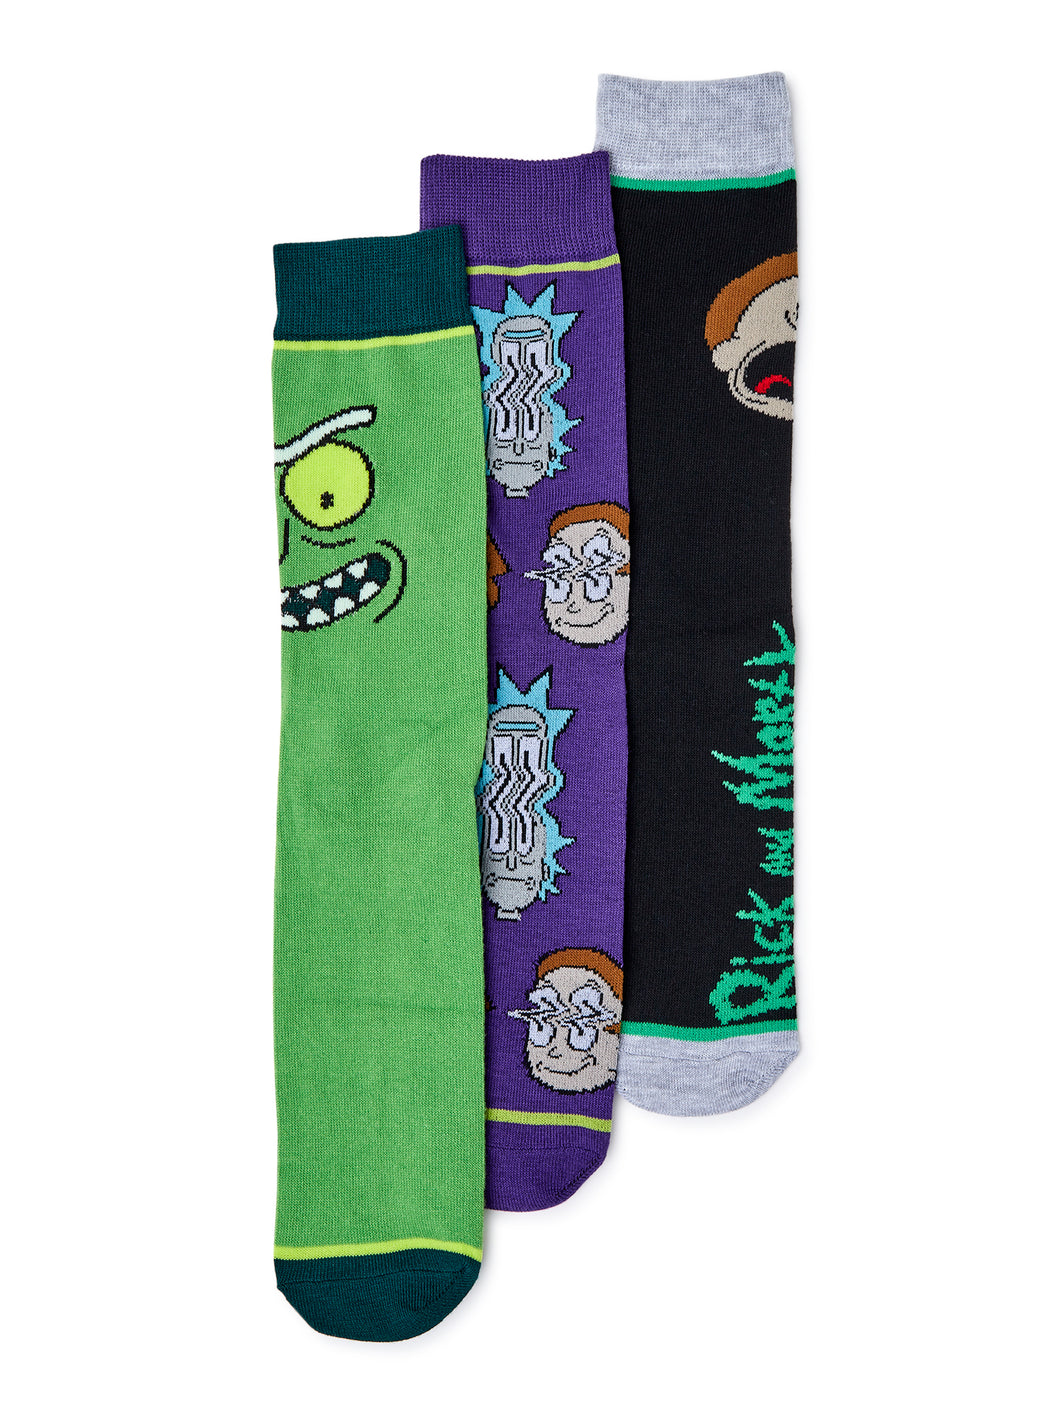 Rick and Morty Men's Socks, 3-Pack